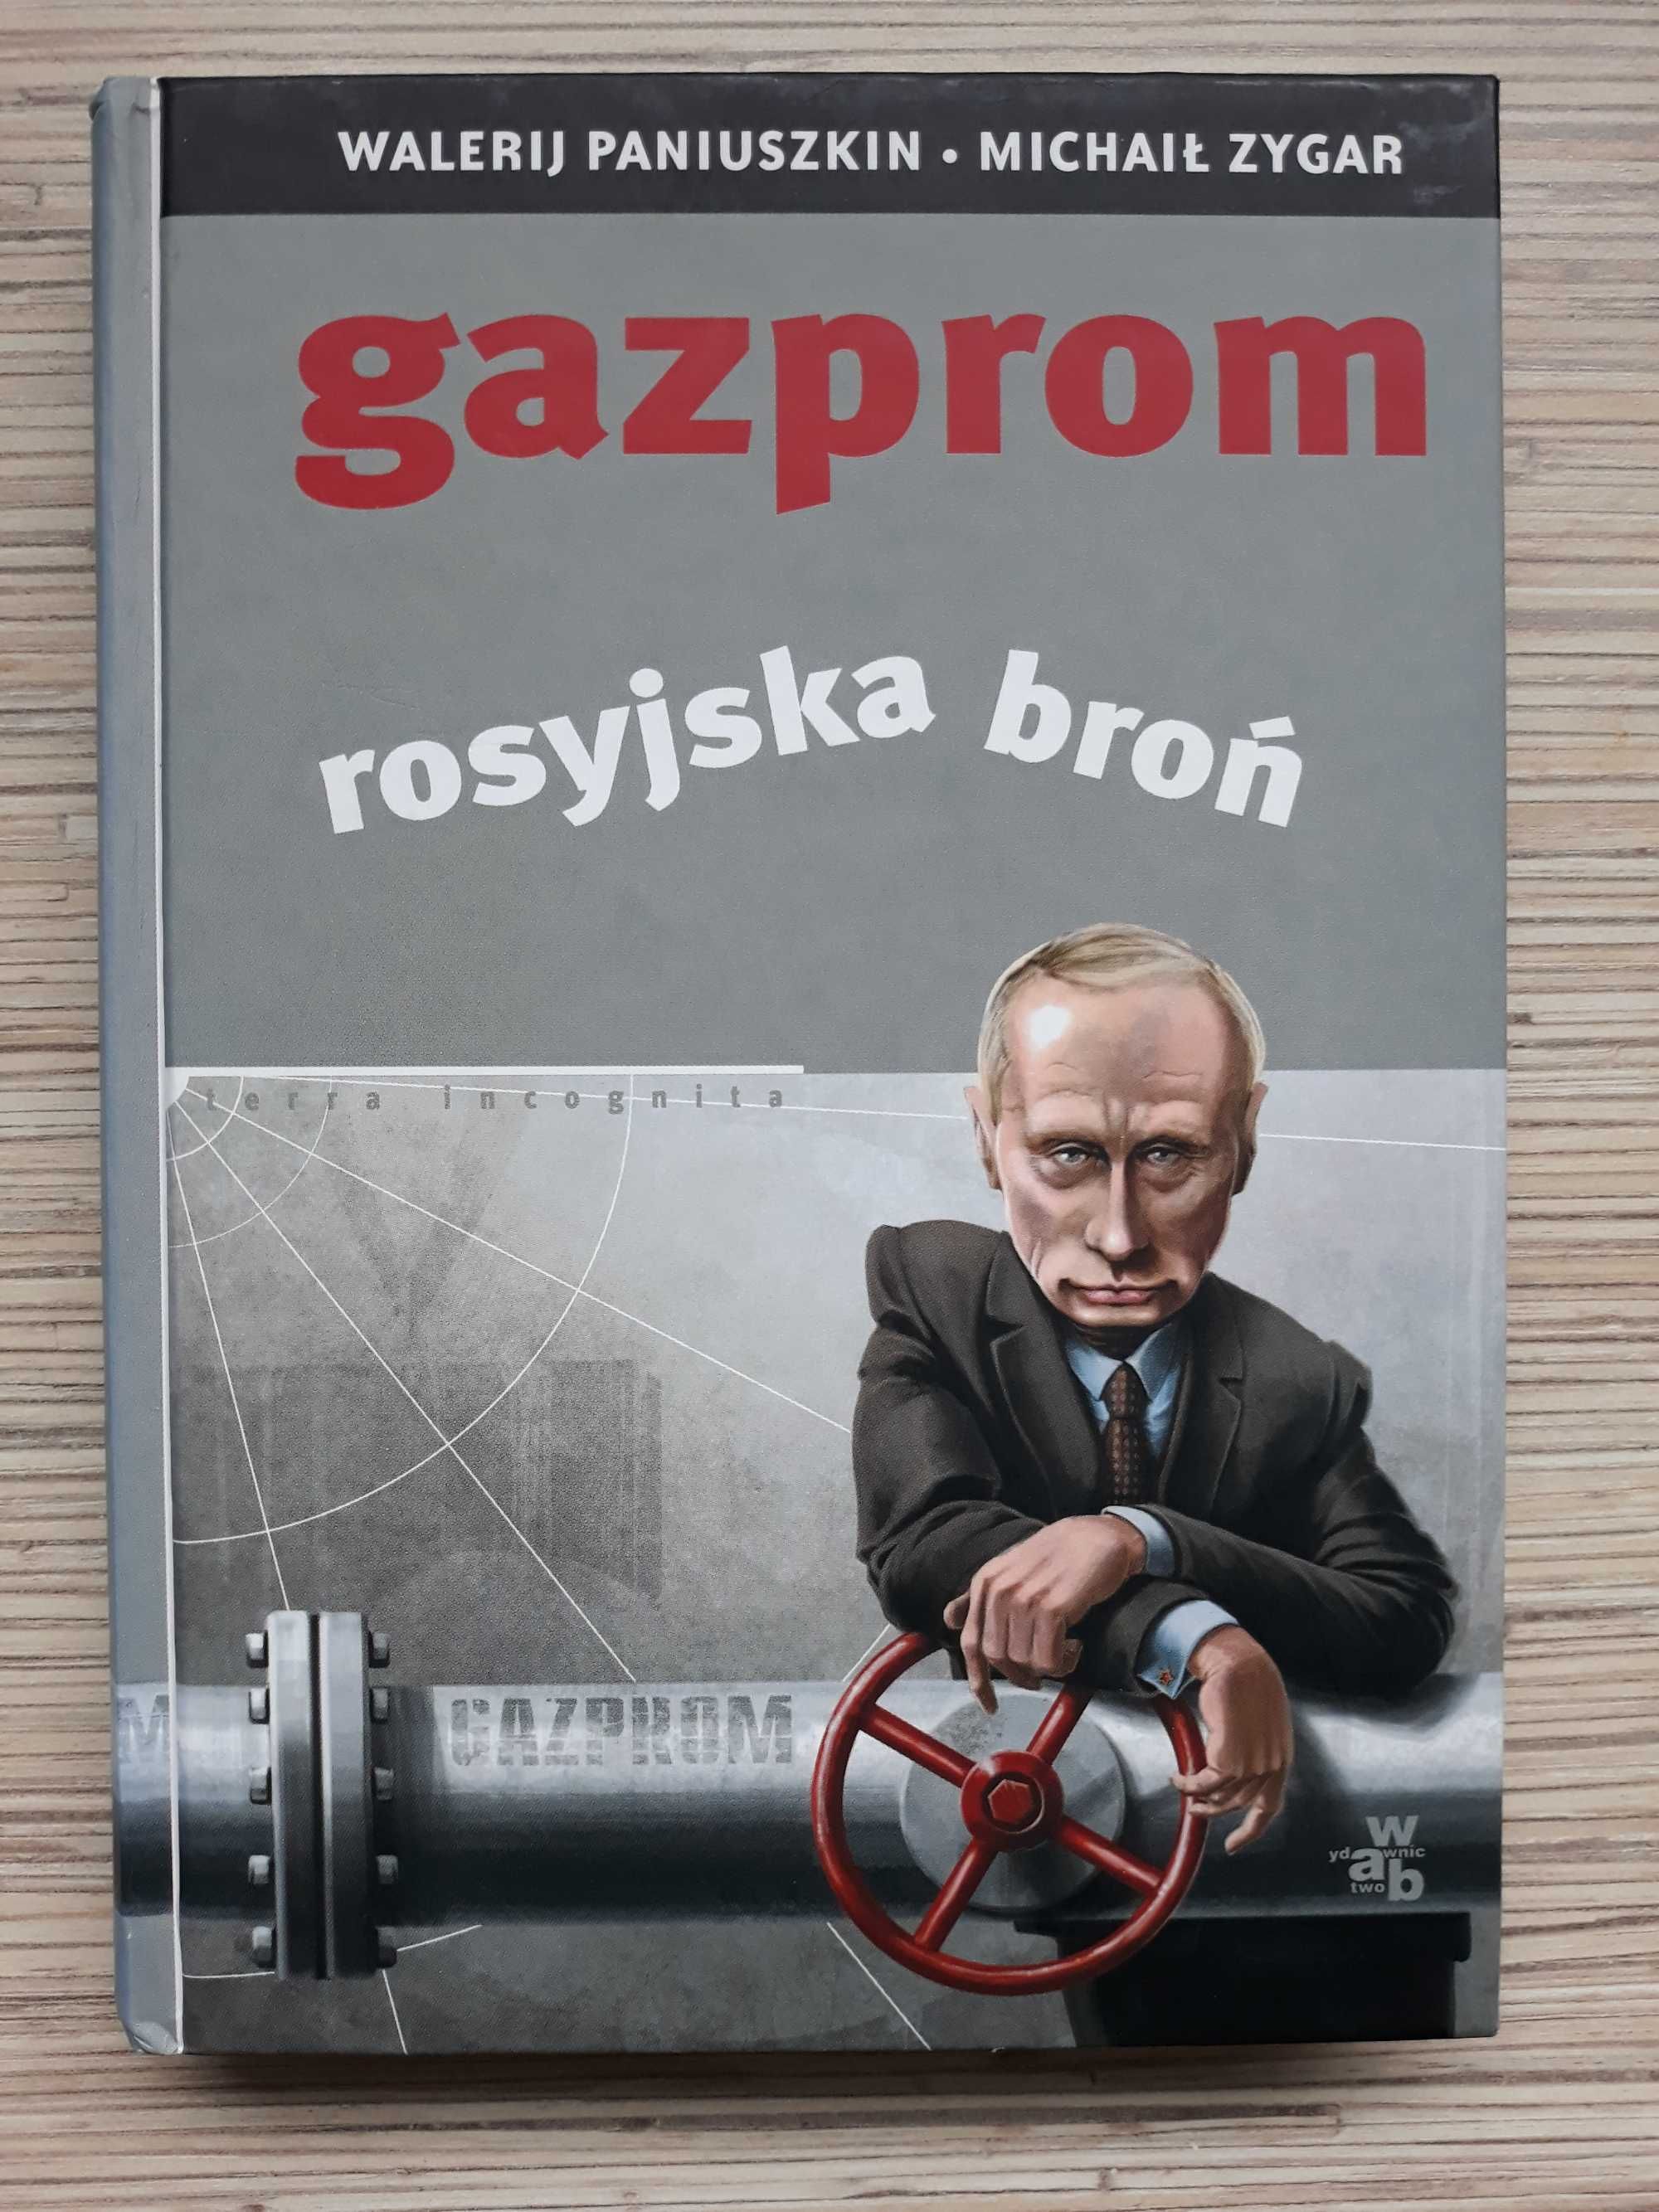 W. Paniuszkinm M. Zagar "Gazprom rosyjska broń"